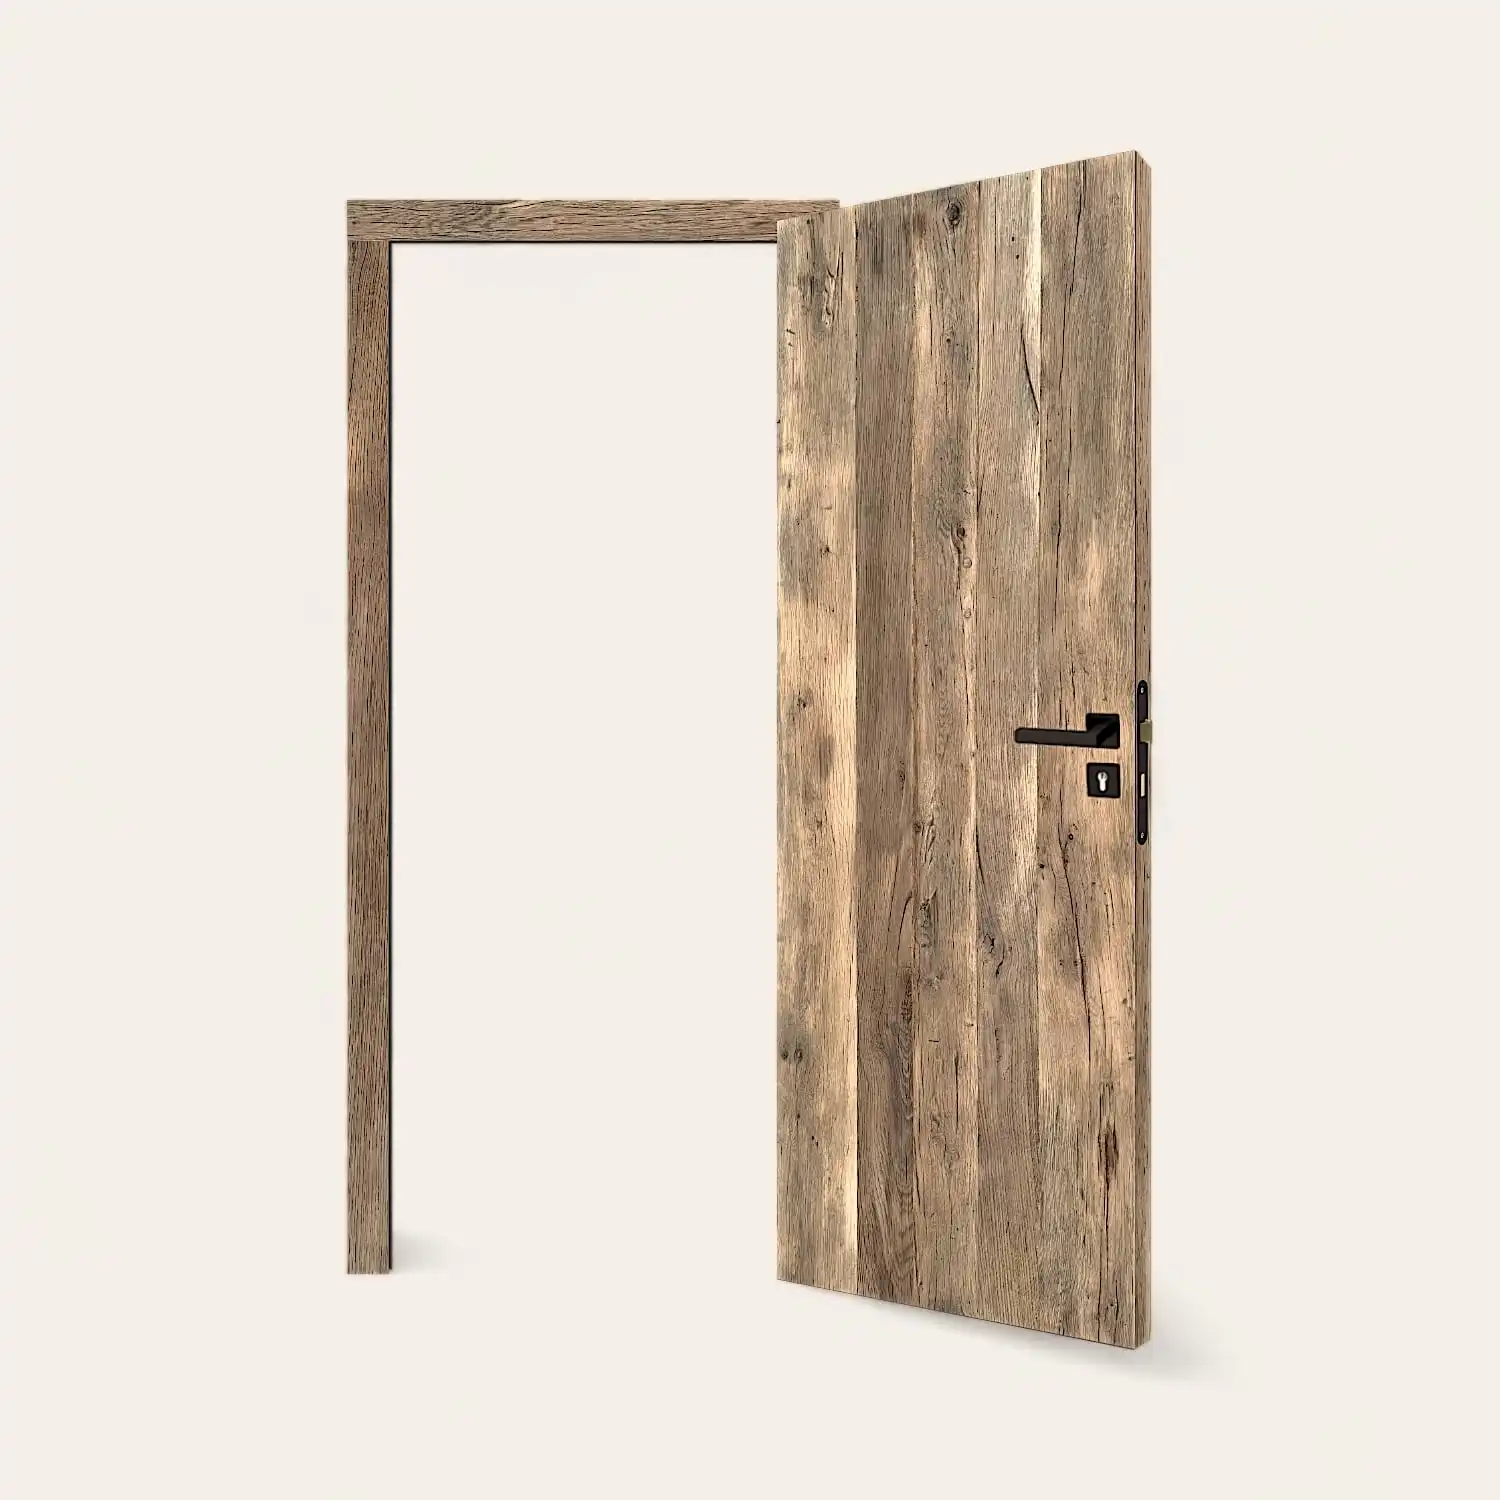  Une porte en vieux chêne rustique ouverte sur fond blanc. 